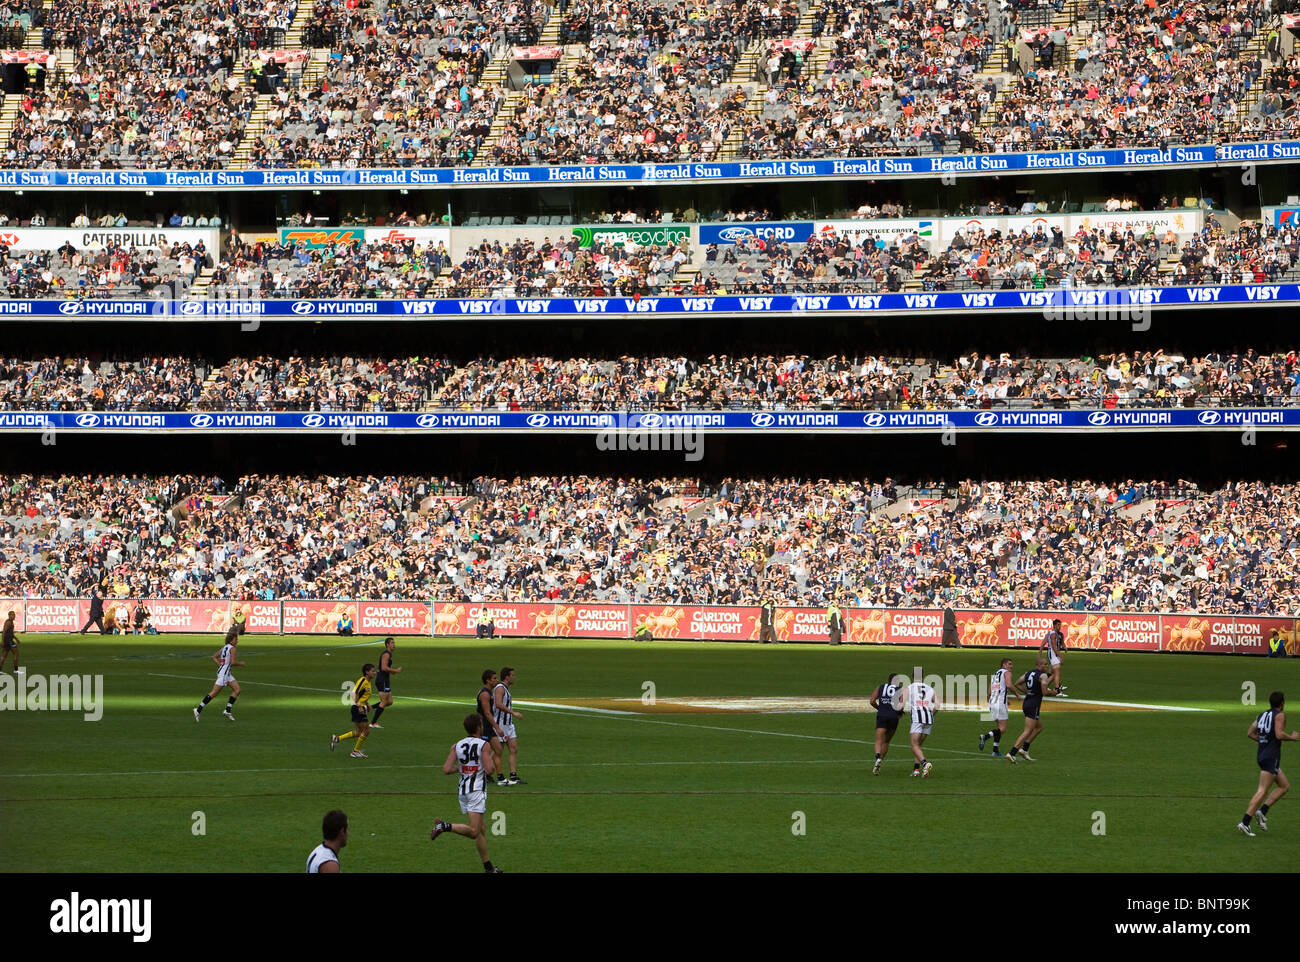 Menschenmengen füllen der Melbourne Cricket Ground während eines Spiels der Australier ordnet Fußball in Melbourne, Victoria, Australien. Stockfoto